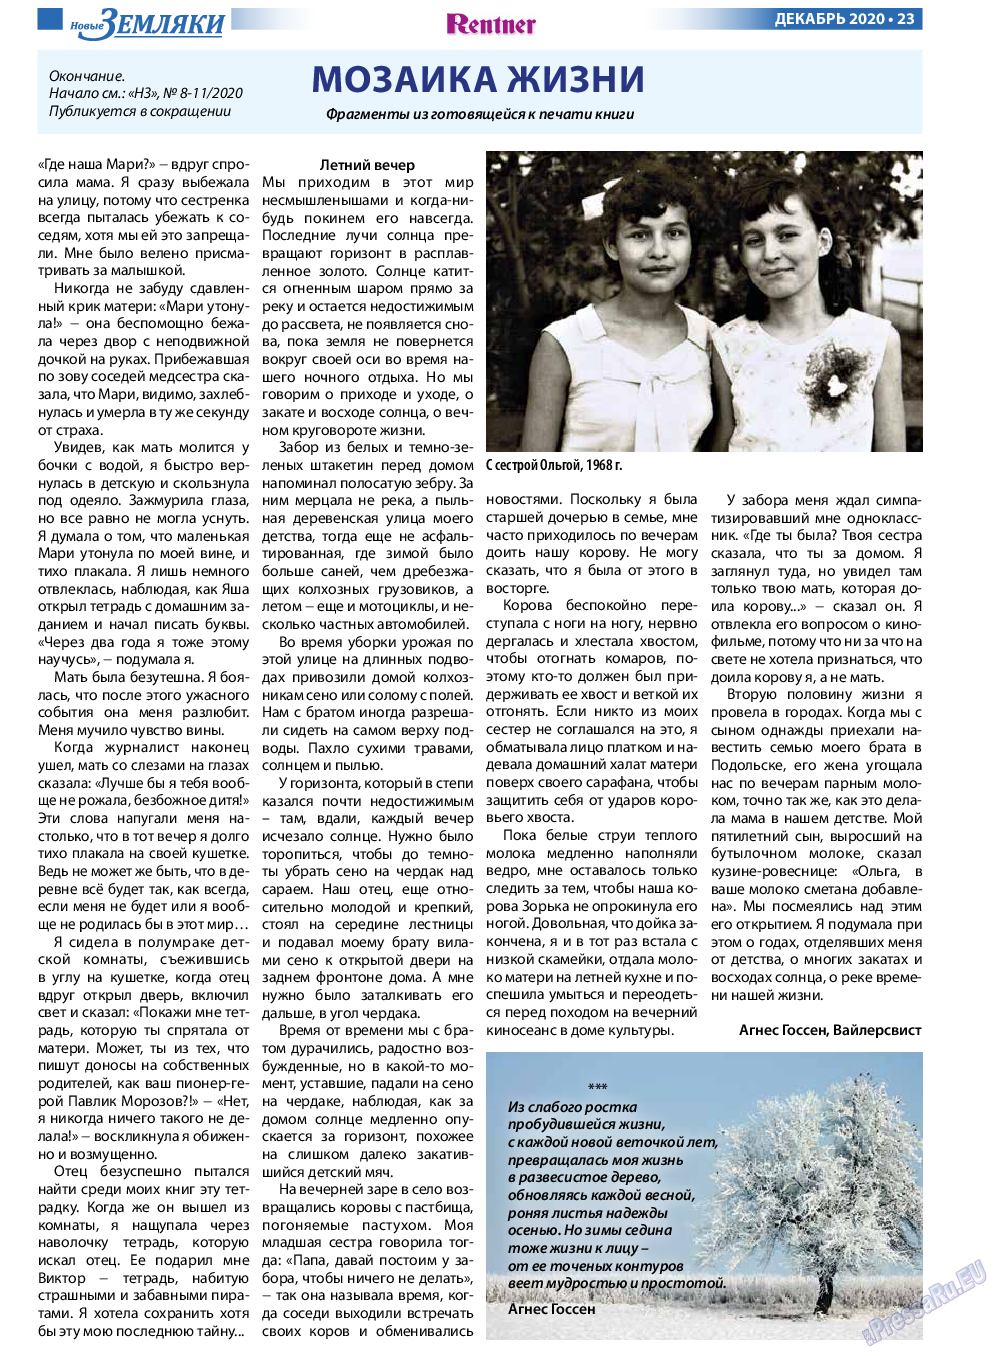 Новые Земляки, газета. 2020 №12 стр.23